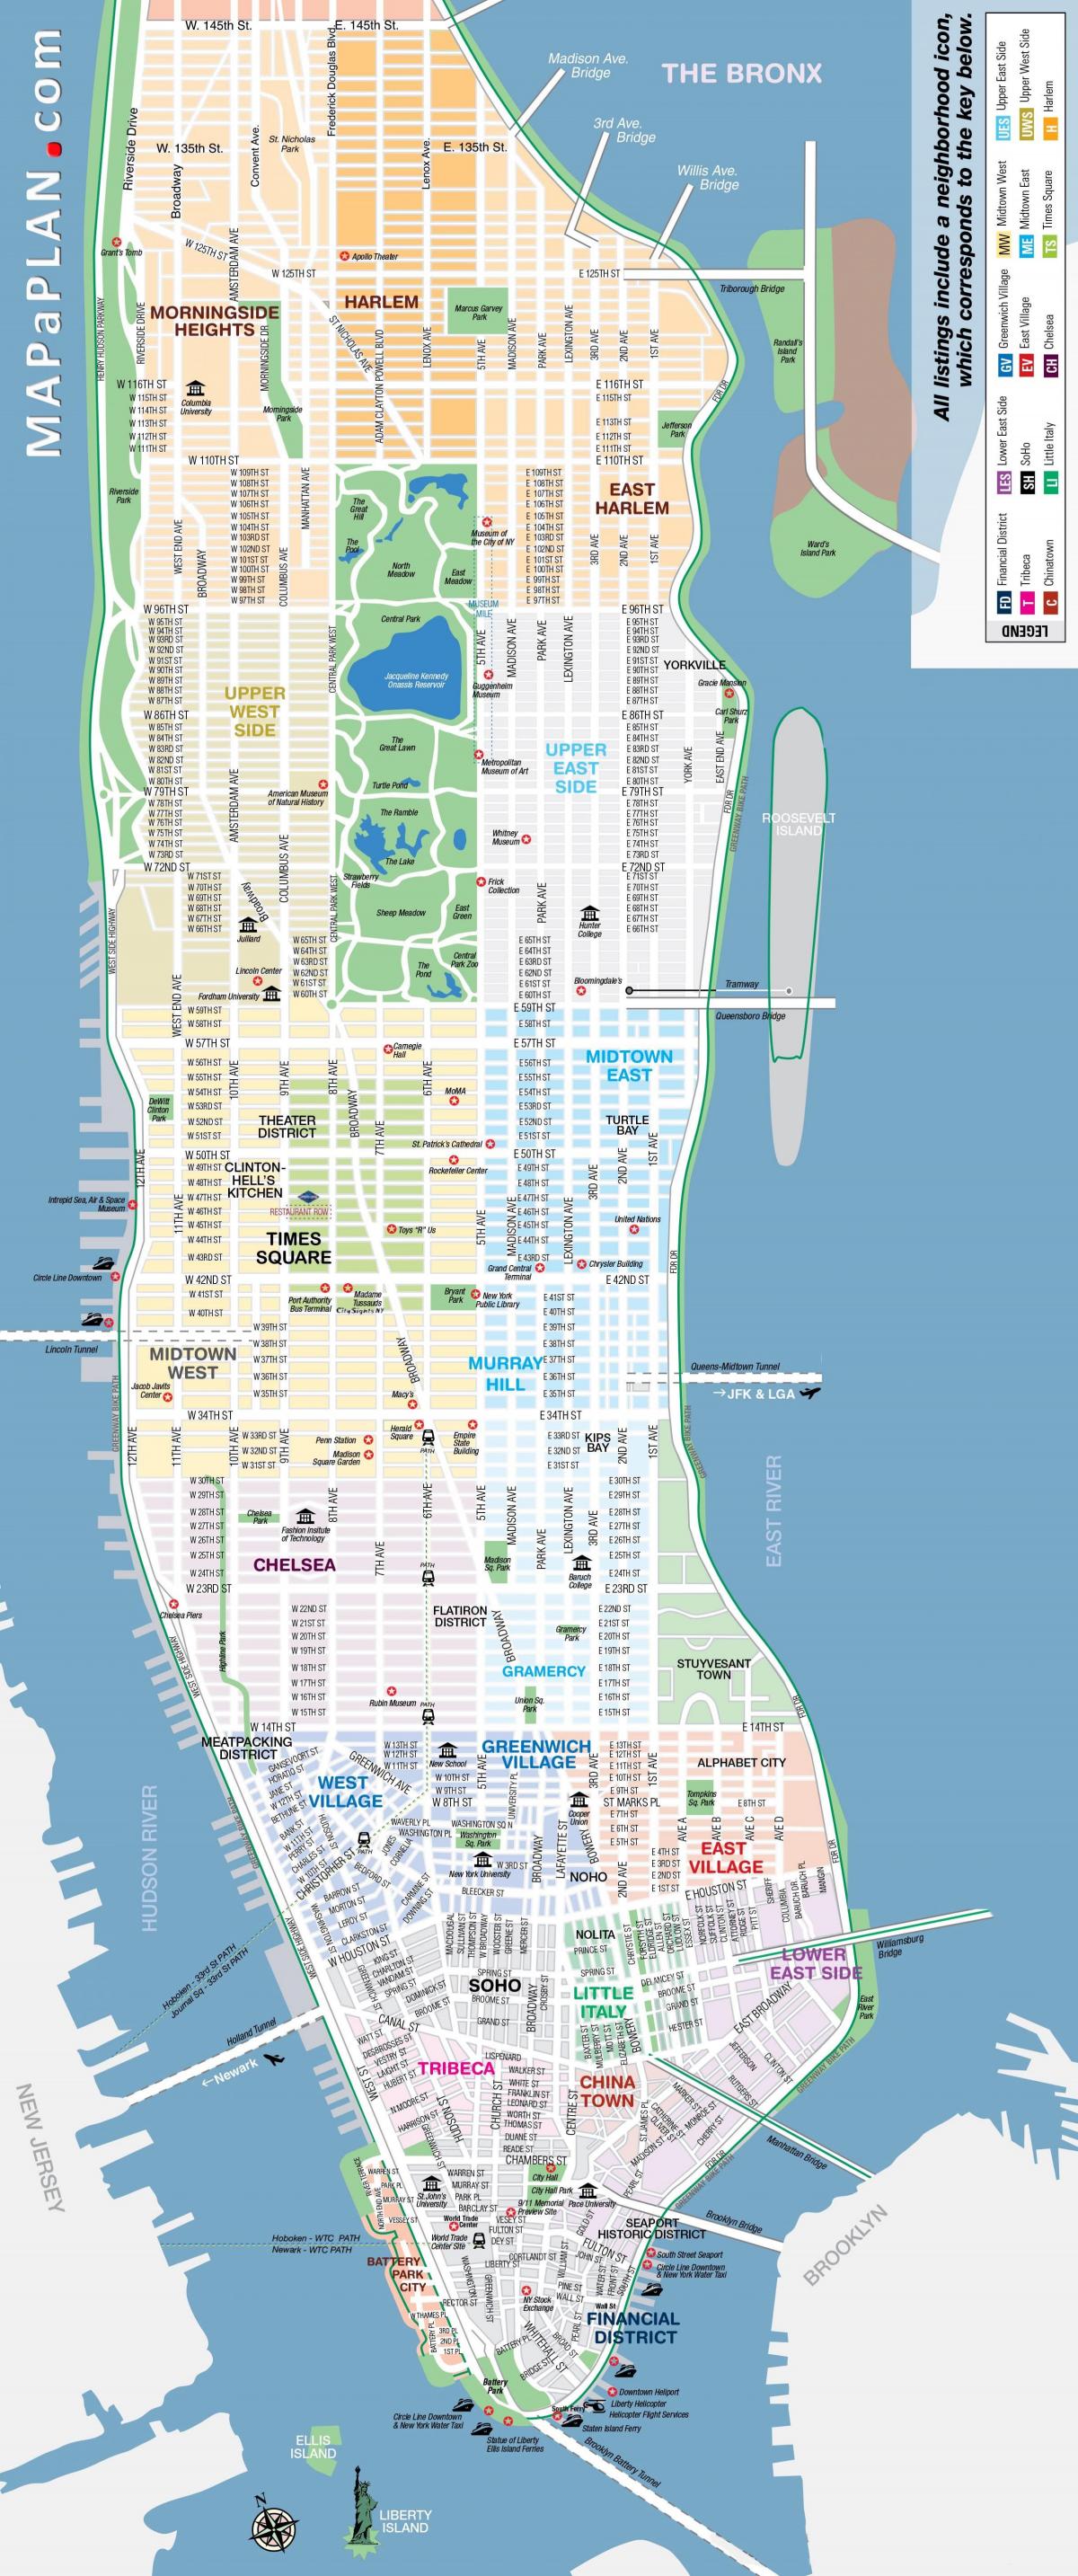 Plan des rues de Manhattan